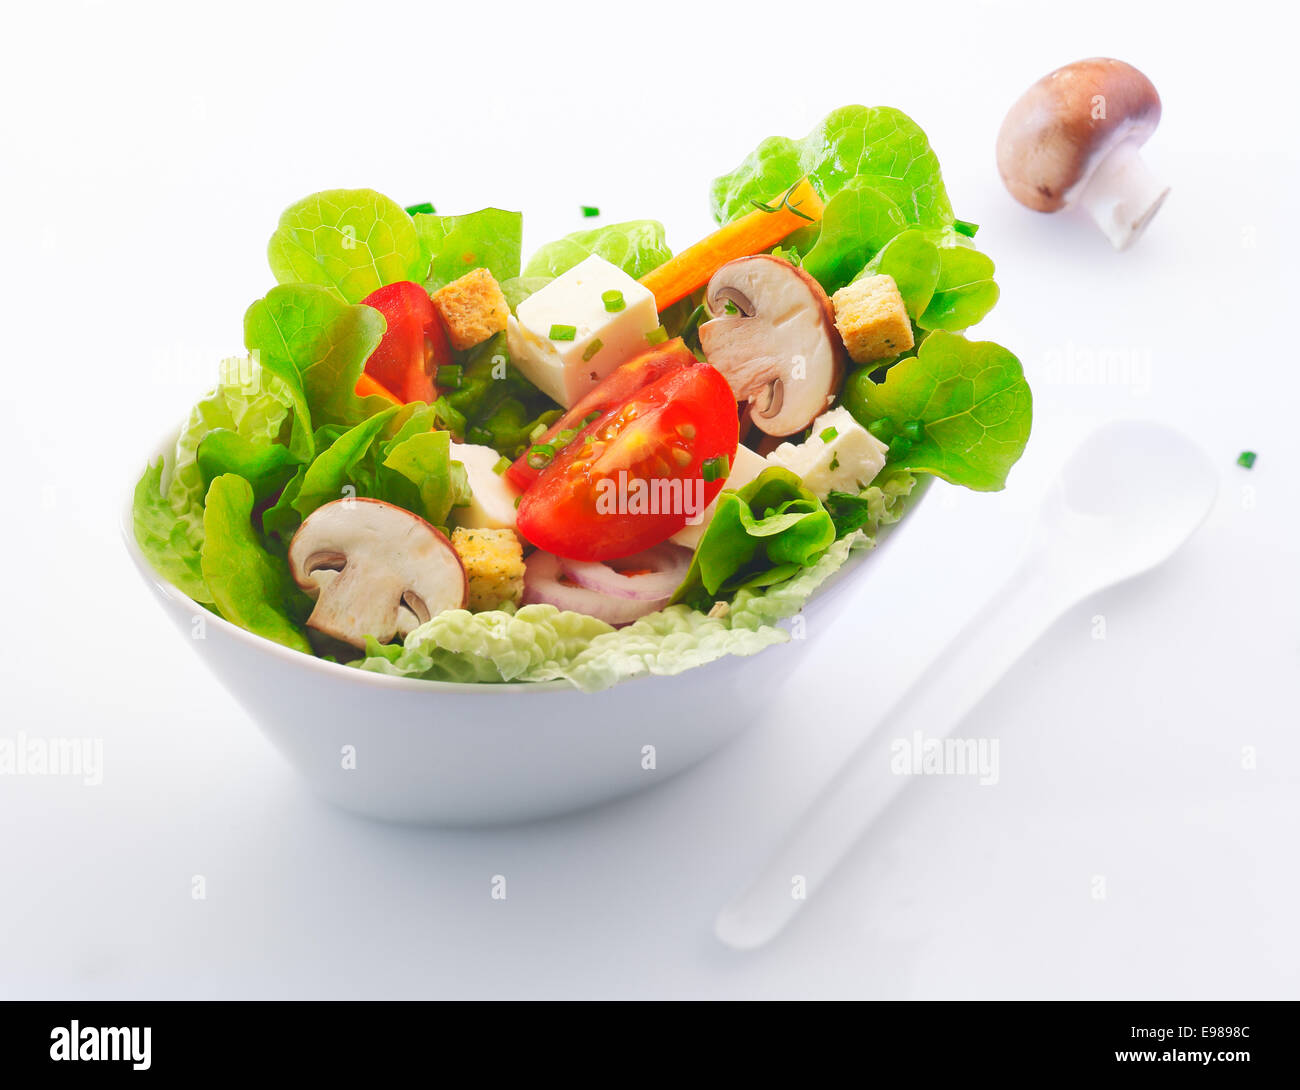 Lato singolo che serve in porcellana bianca piatto di fresca insalata mista con funghi freschi tagliati , pomodoro e formaggio feta Foto Stock